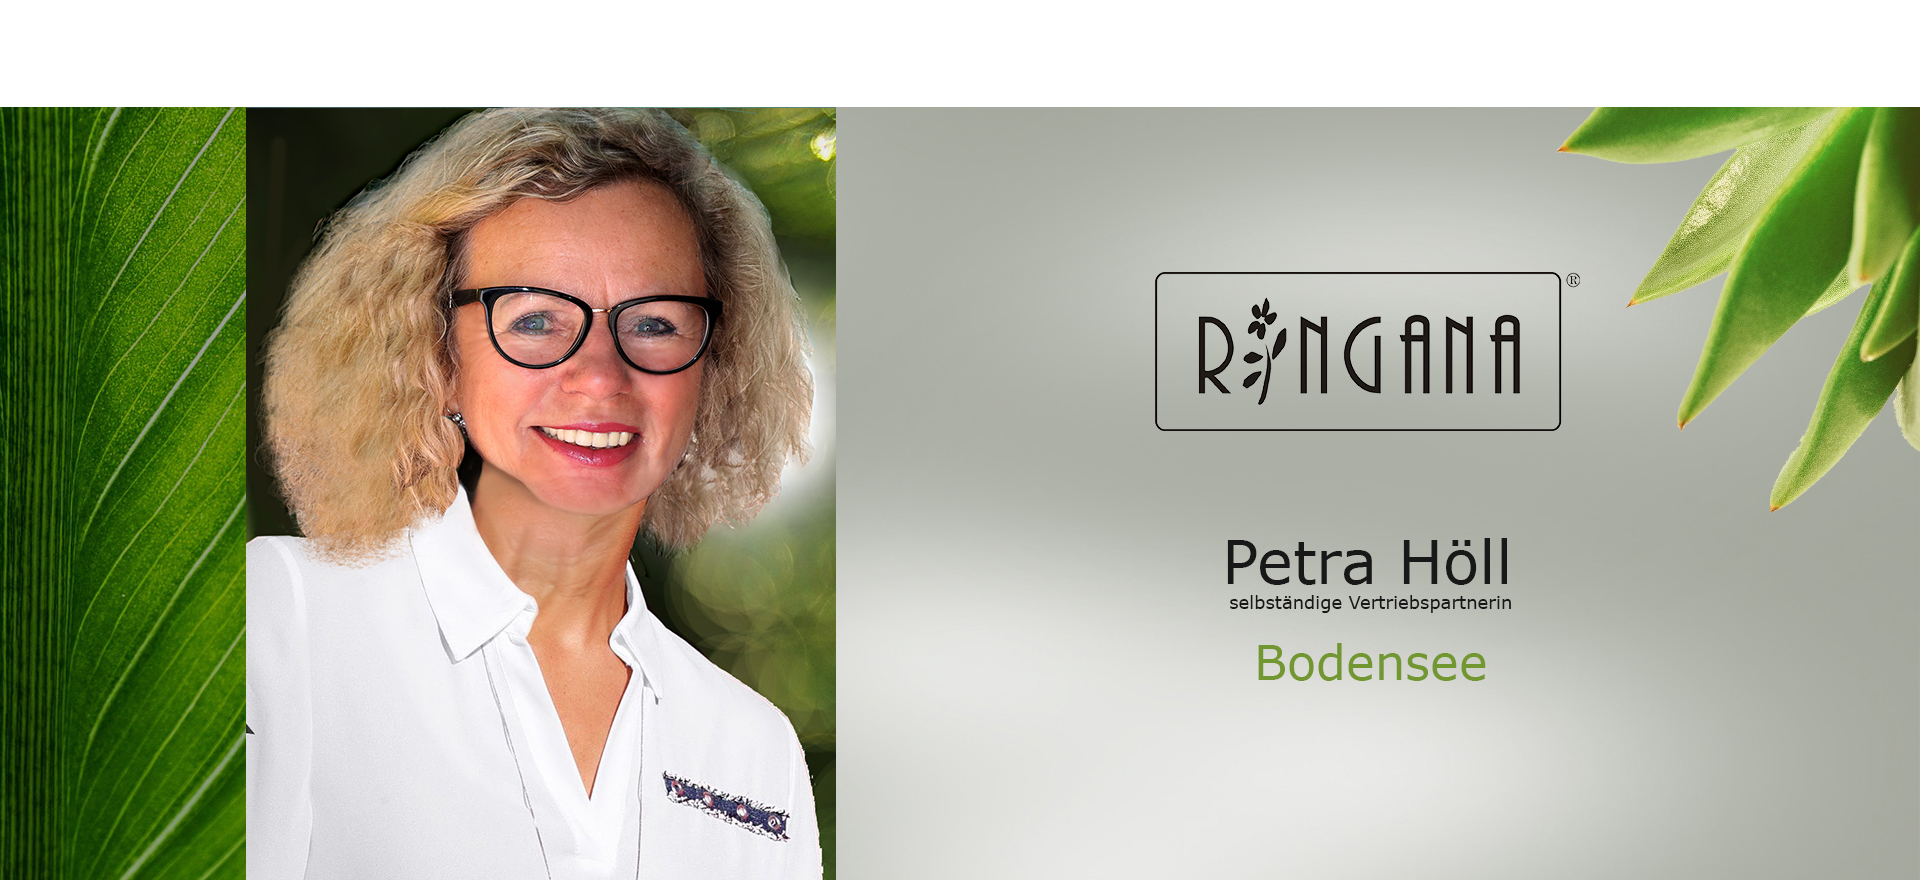 Ringna-Petra Höll Bodensee